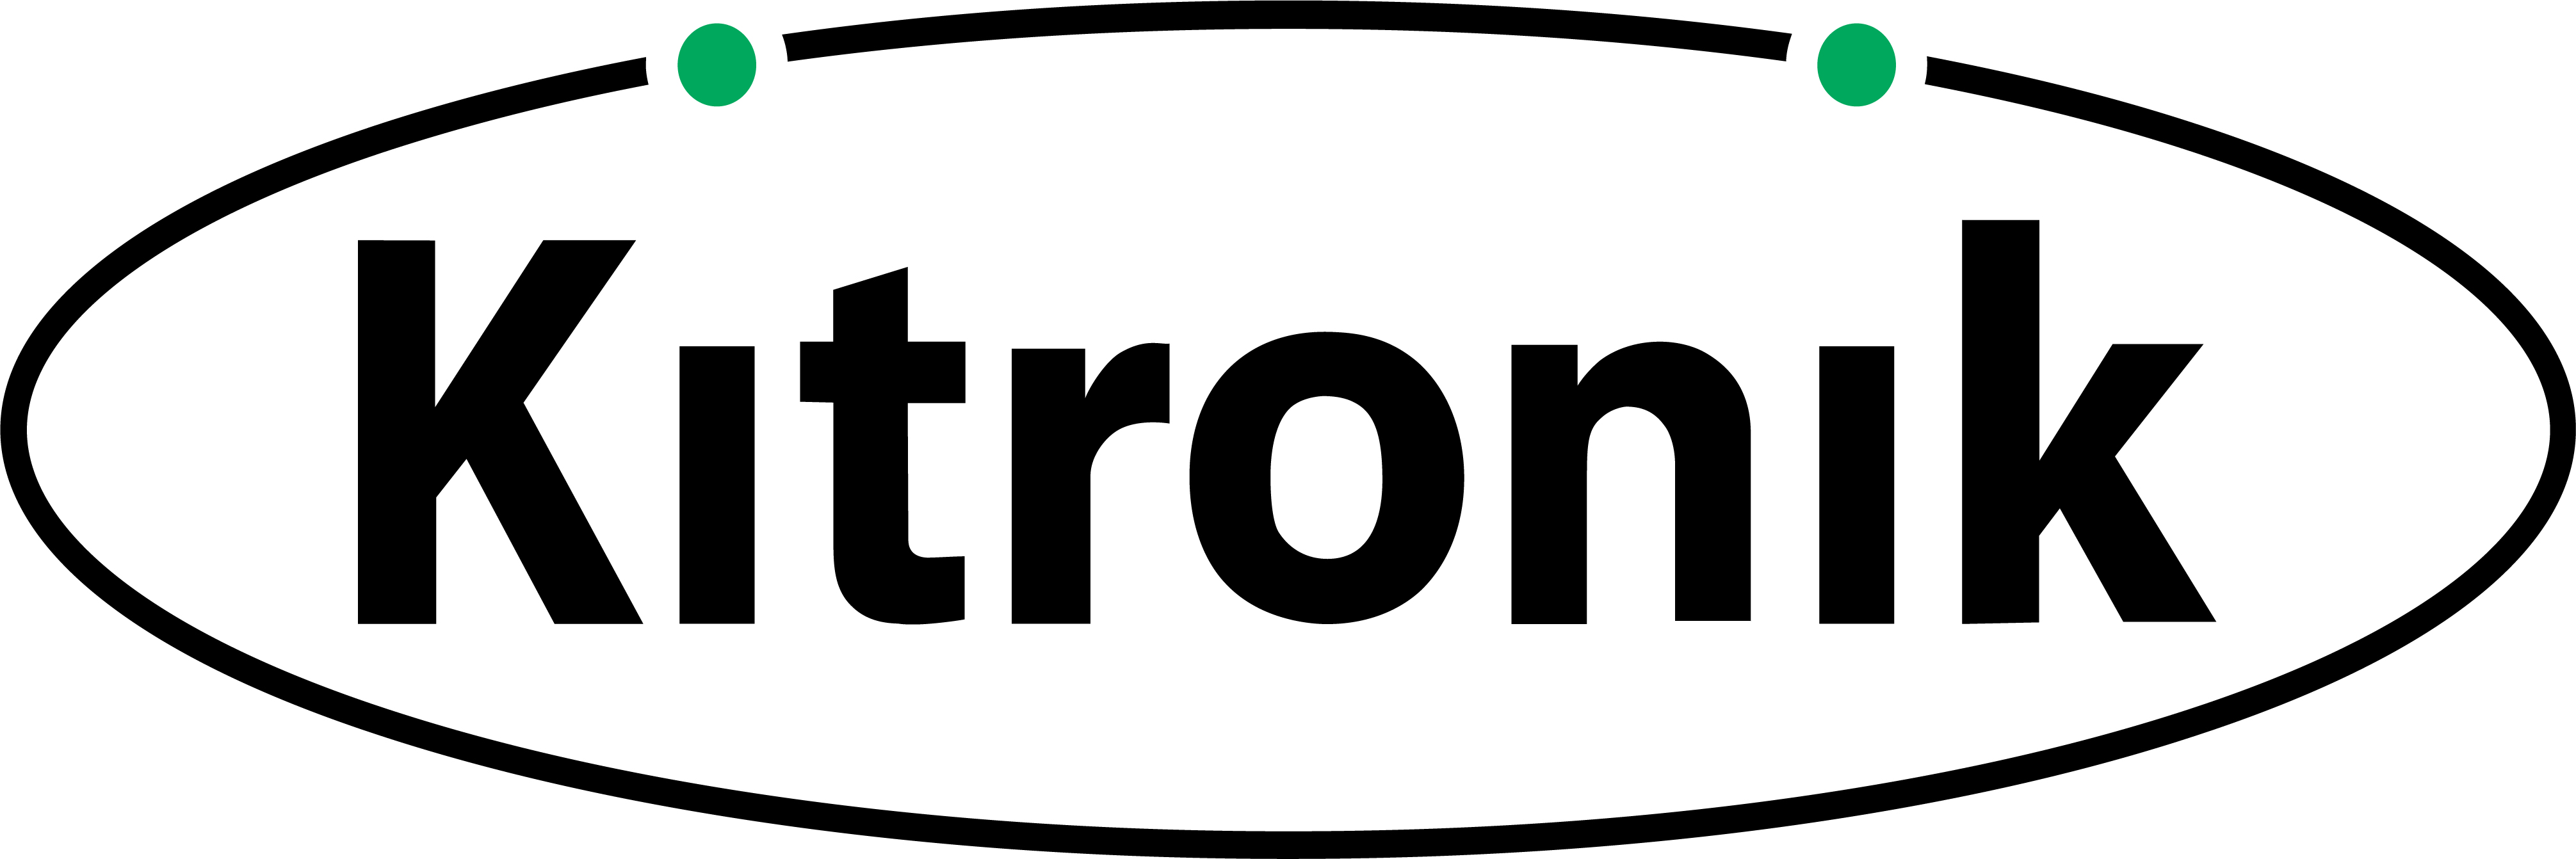 Kitronik logo